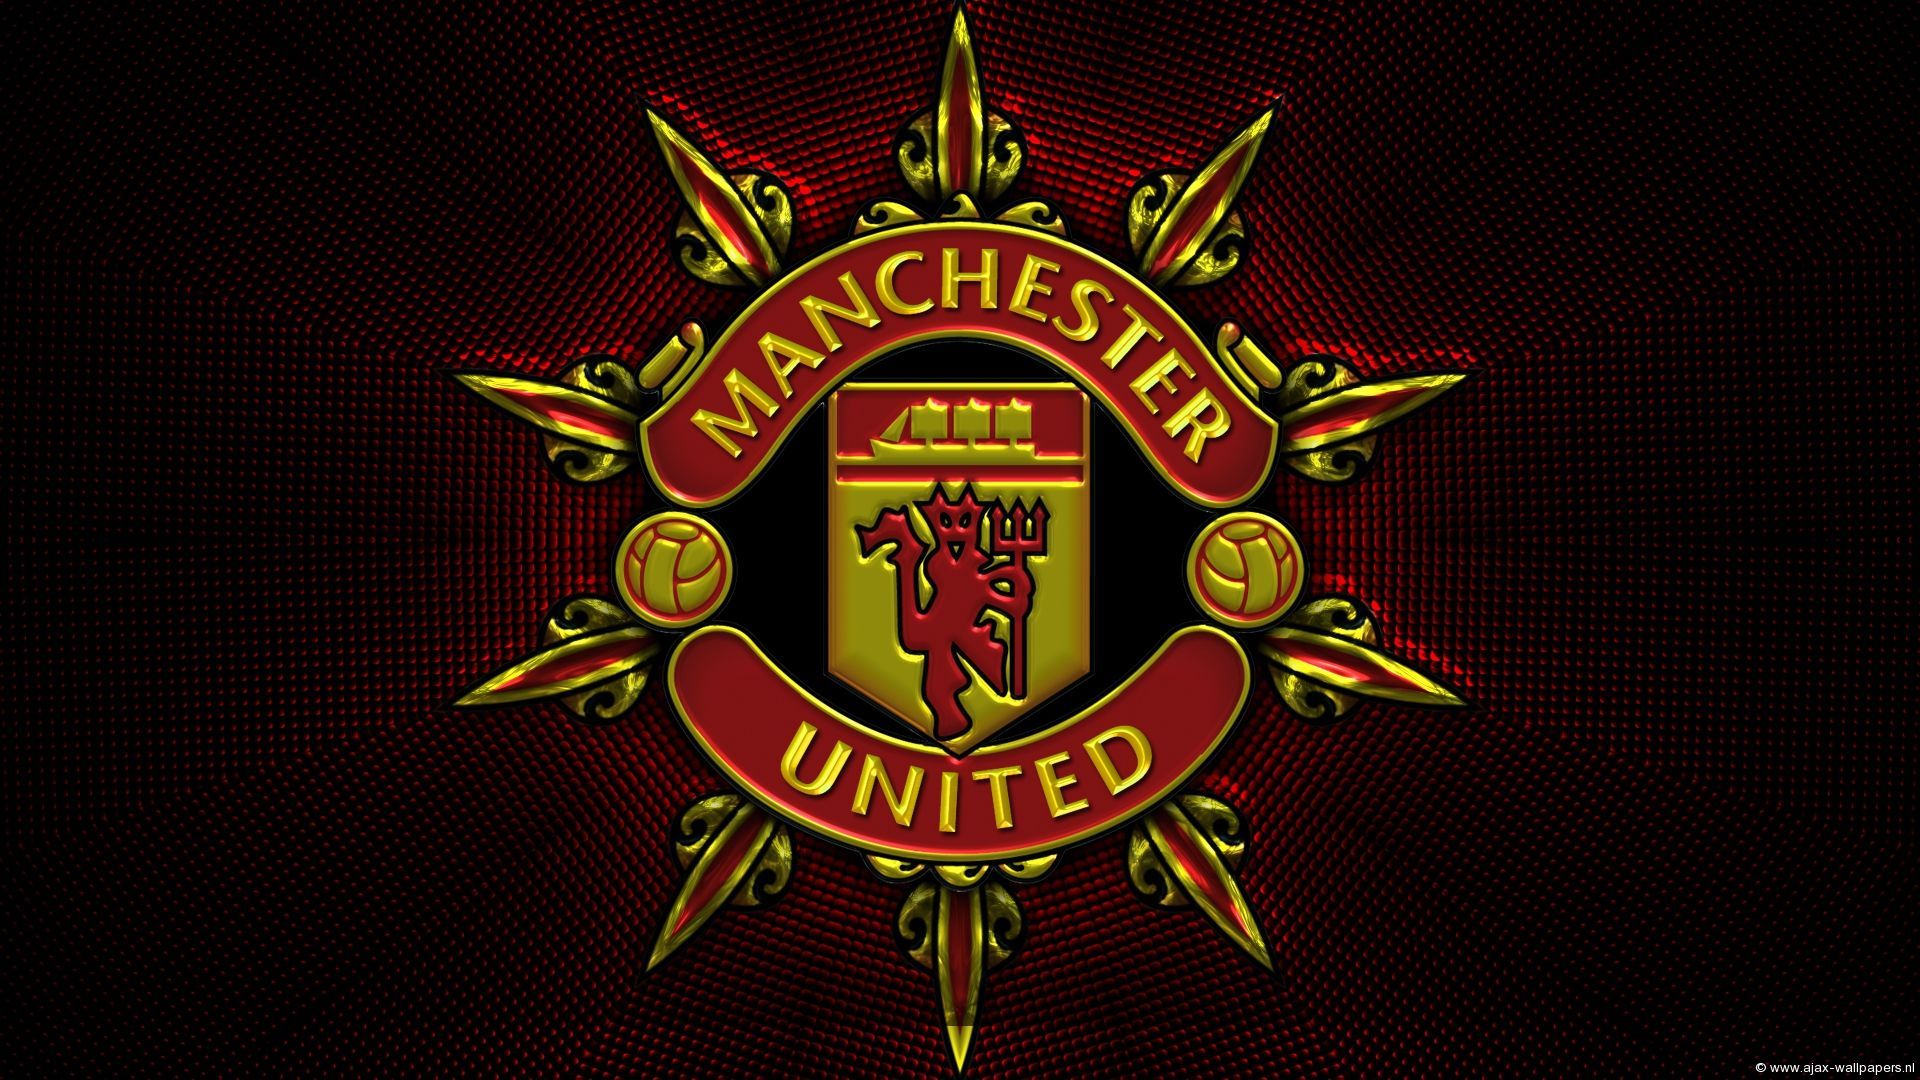 Manchester United Wallpaper Widescreen | Man Unted | Pinterest ...